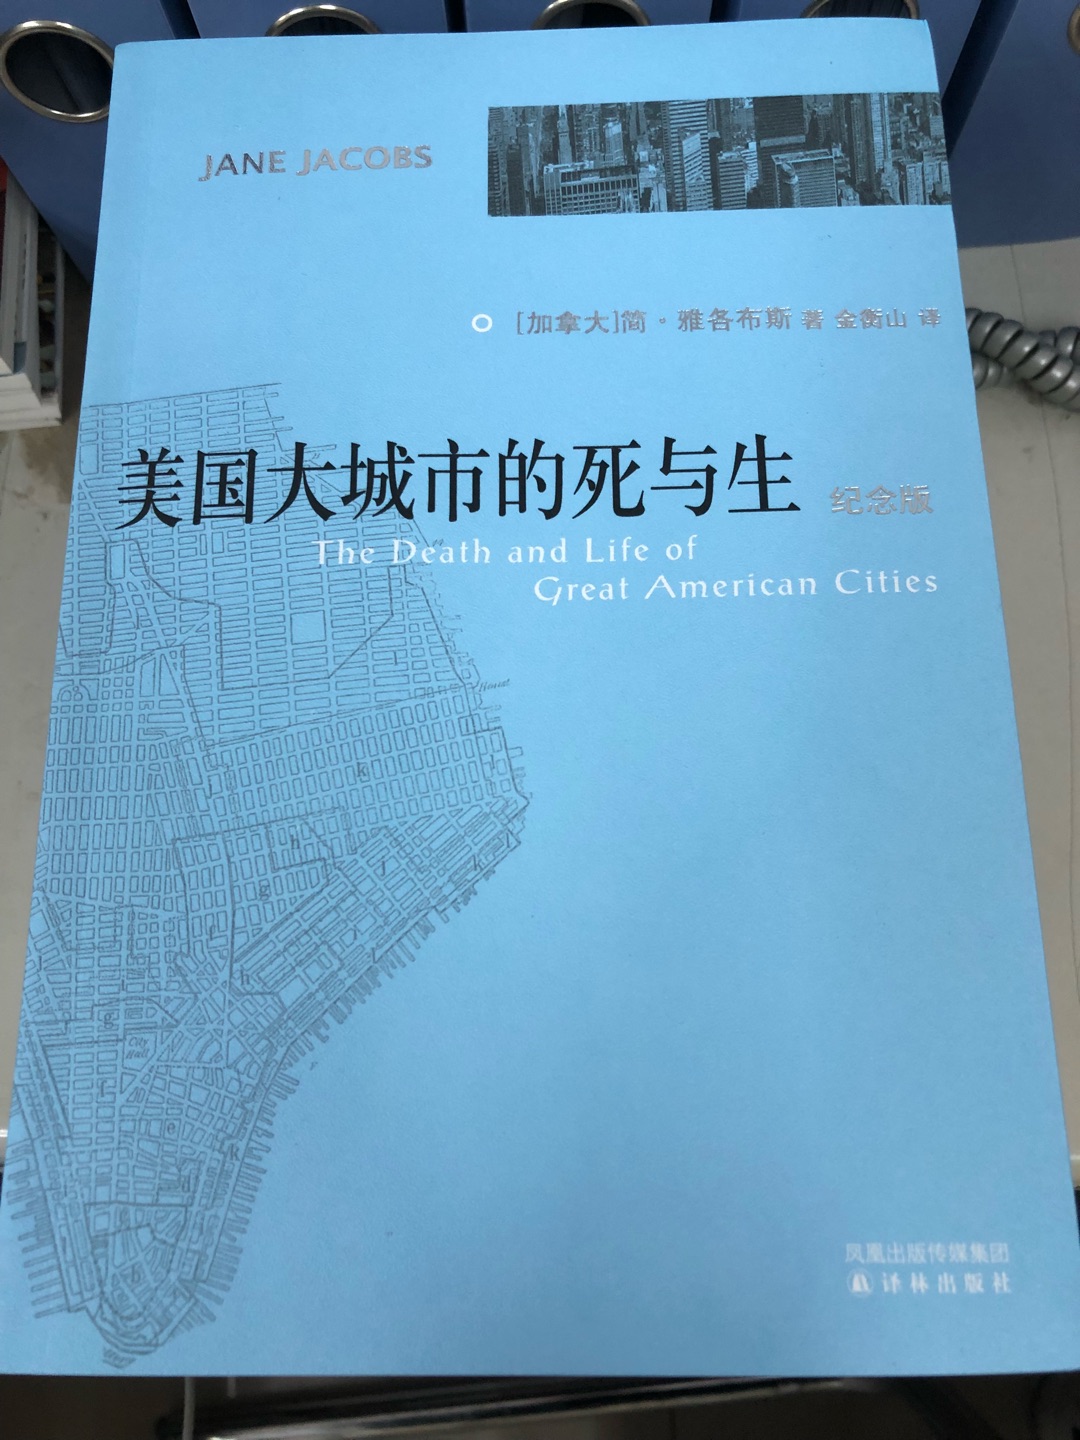 很经典的一本著作，作者从来没有城市规划经验，但是竟然能写出这样一部作品，很值得敬佩。一个普通的工人，主妇